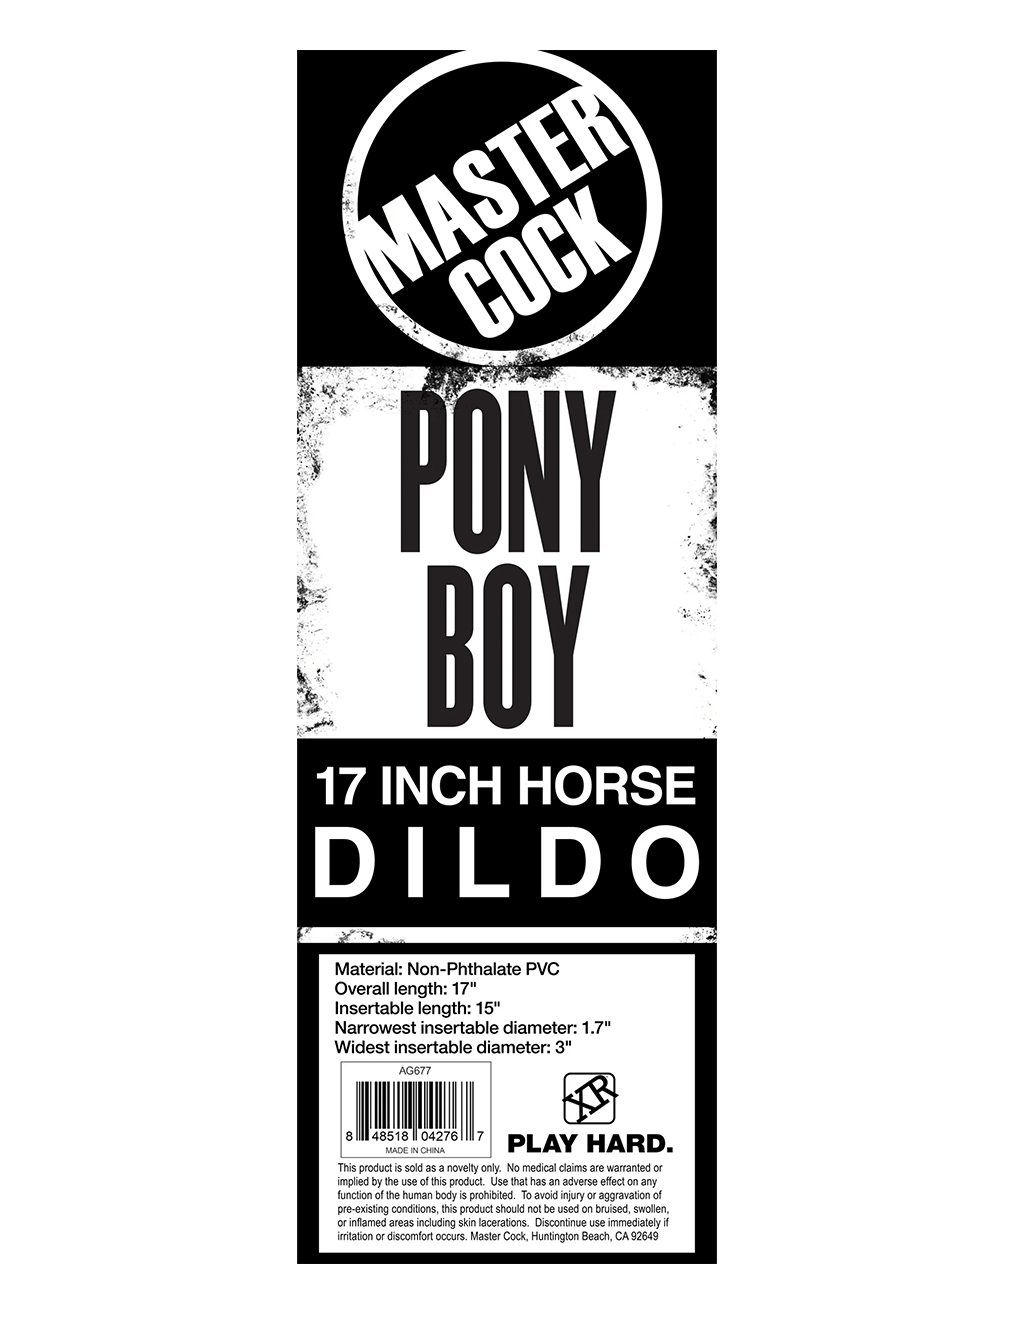 Pony Boy 17" Horse Dildo - Box Back